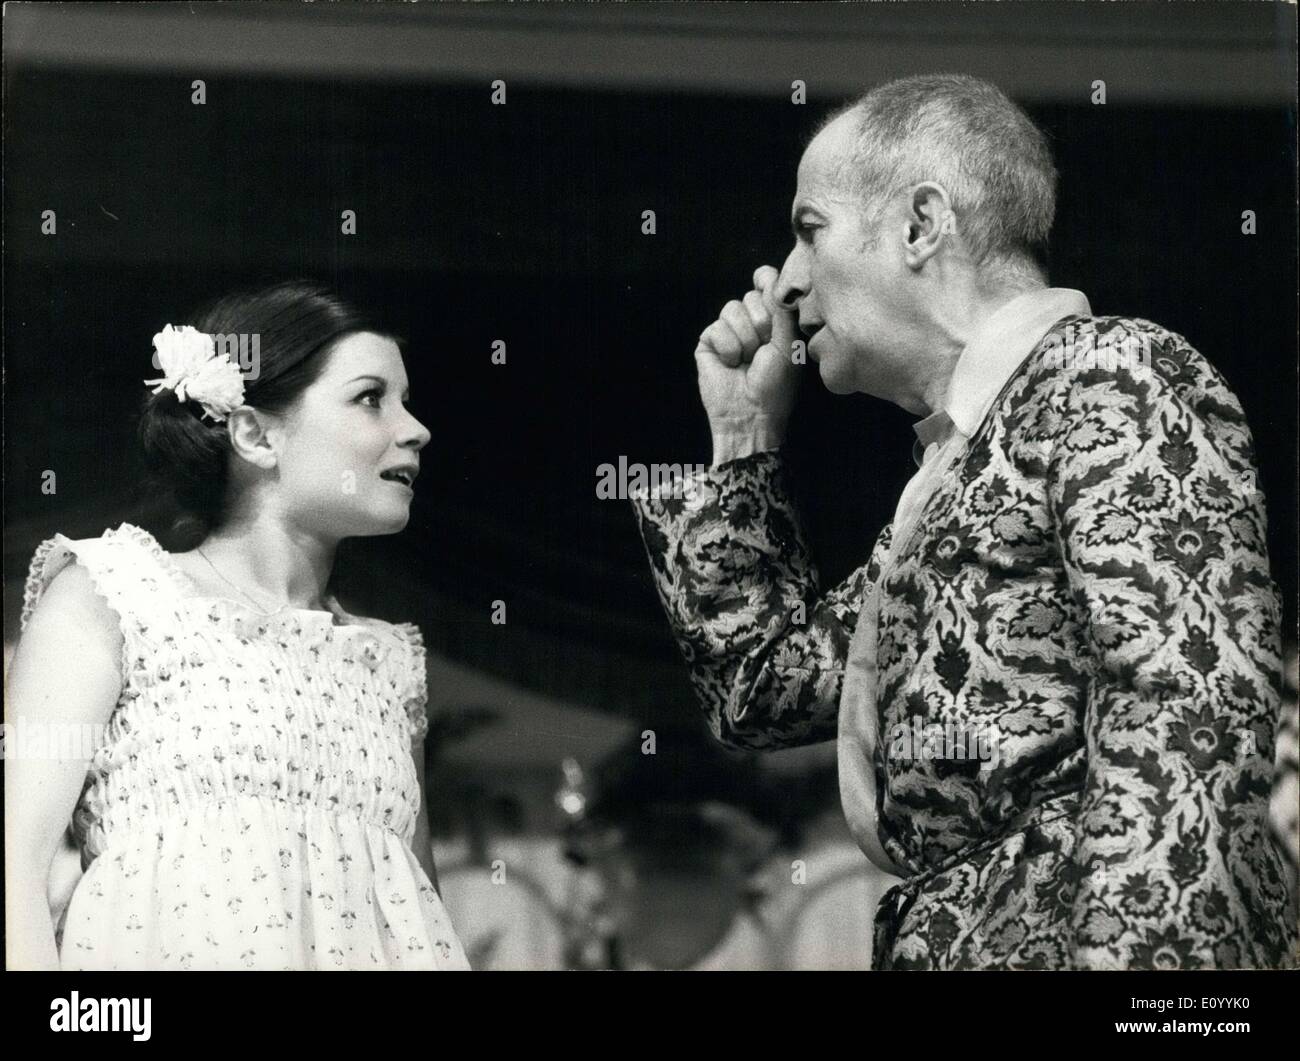 30 novembre 1971 - Louis de Funes revient au théâtre avec la pièce ''Oscar'' écrite par Claude Magnier et réalisé par Pierre Mondy. Funes va utiliser tous les gestes et grimaces que le public connaît bien. Louis de Funes est photographié ici à l'acte d'une scène de la pièce avec Brigitte Decaire. Banque D'Images